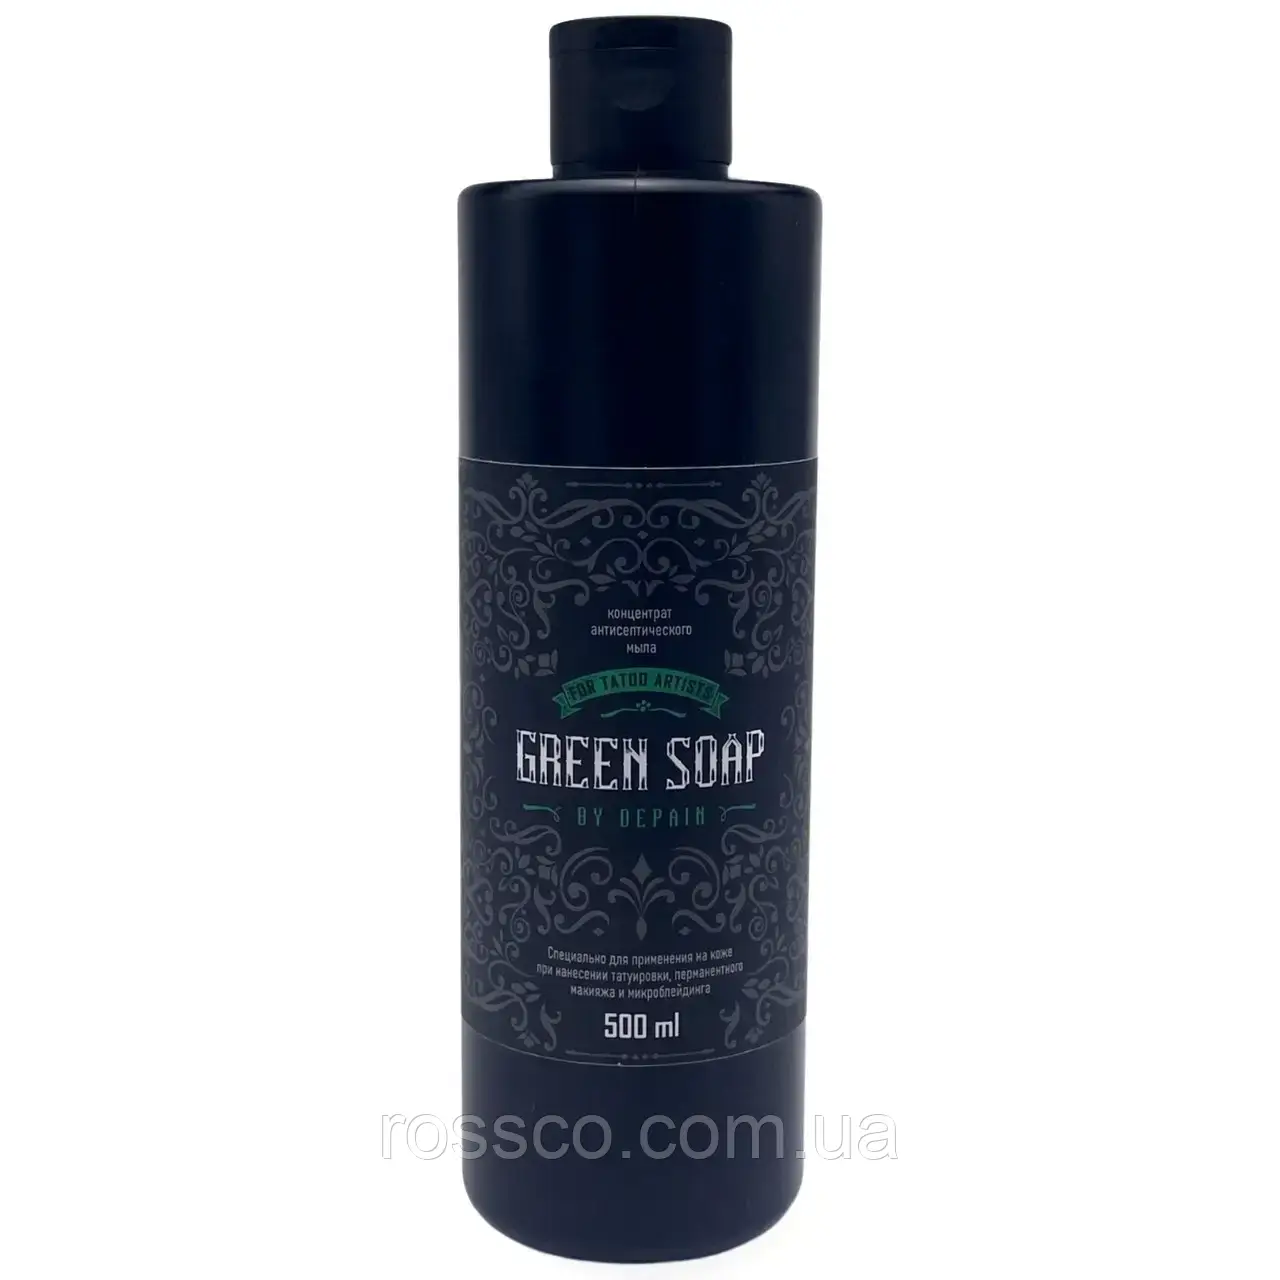 DEPAIN Green Soap Концентрат антисептичного зеленого мила, 250 мл